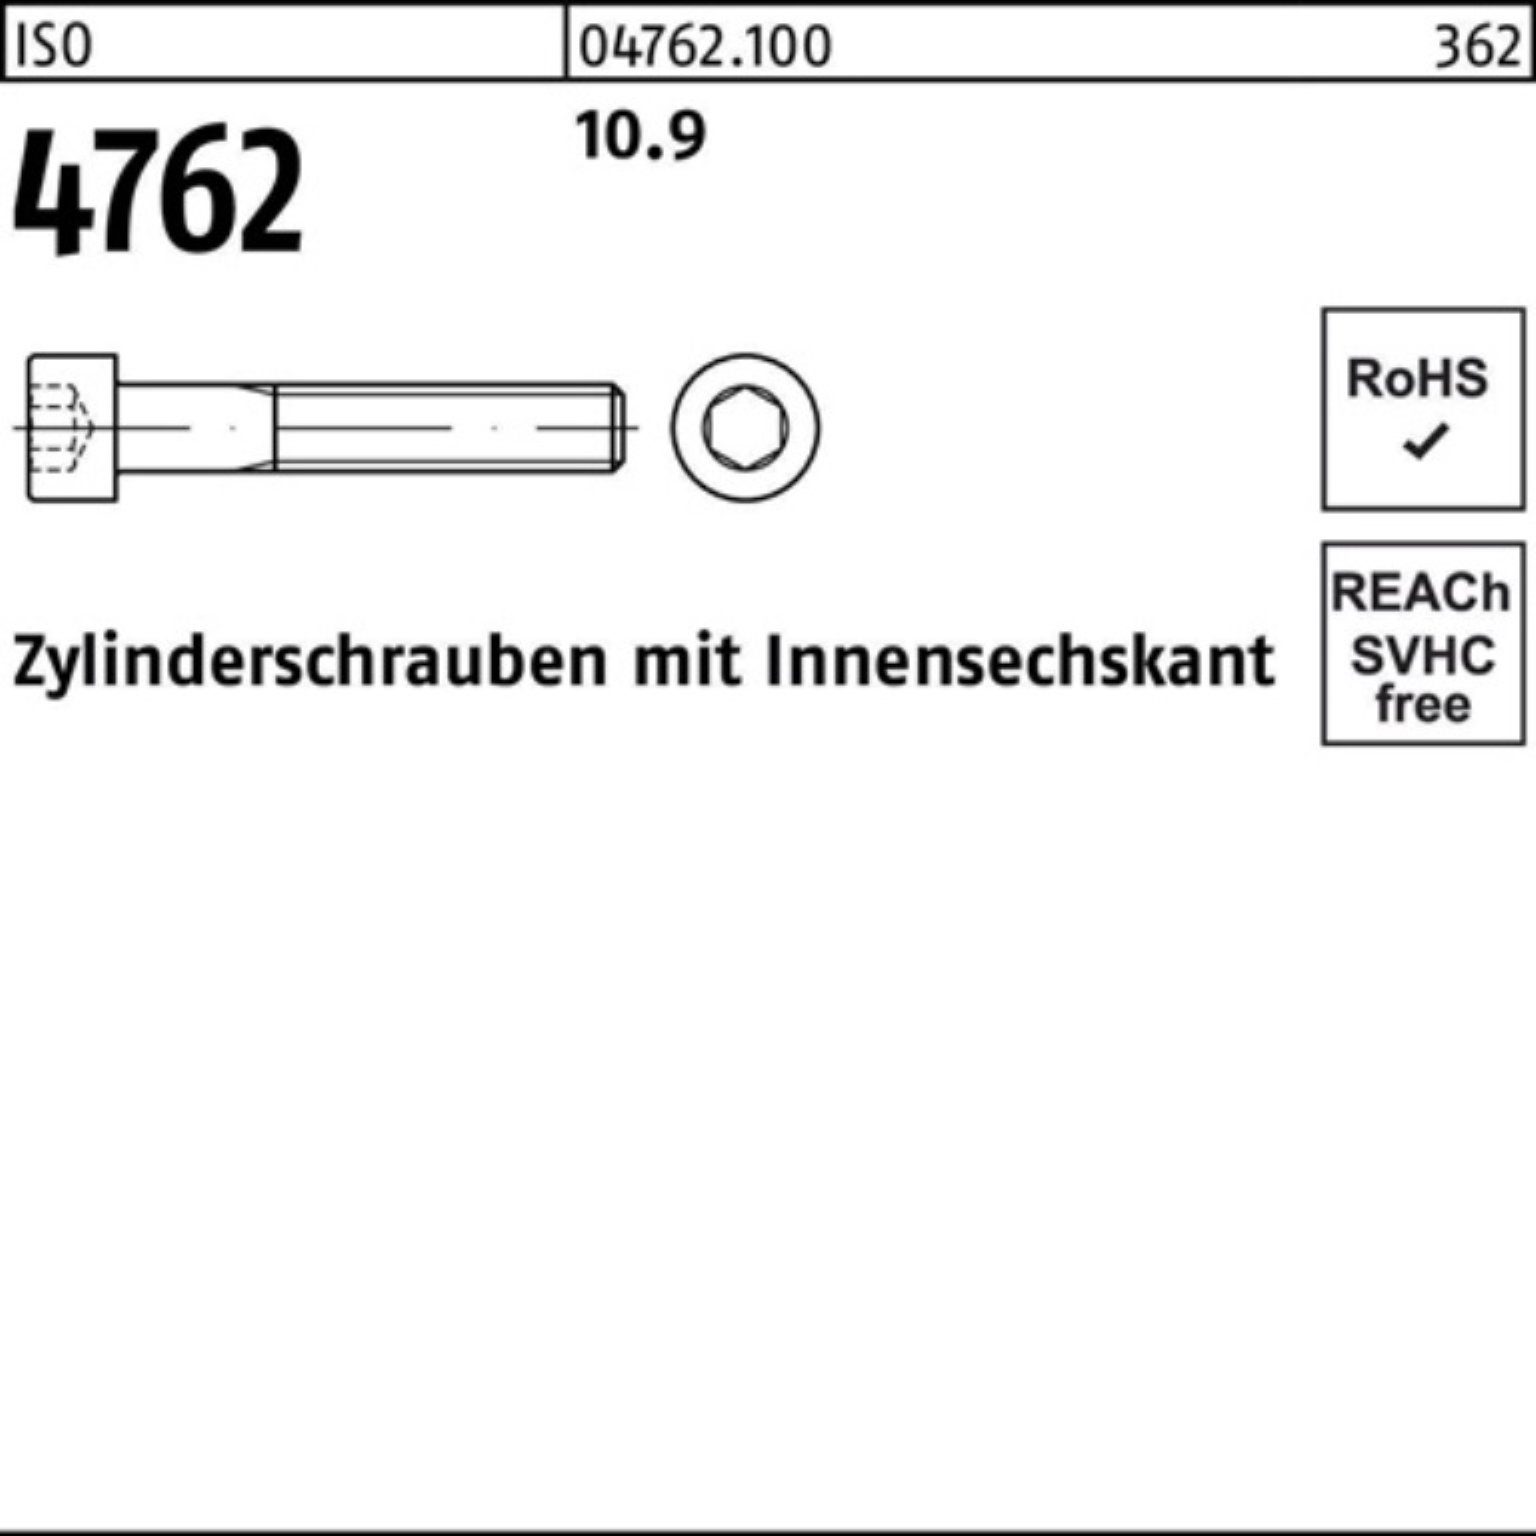 Pack 330 Stück 1 Zylinderschraube Zylinderschraube 100er Innen-6kt 4762 10.9 ISO Reyher M30x